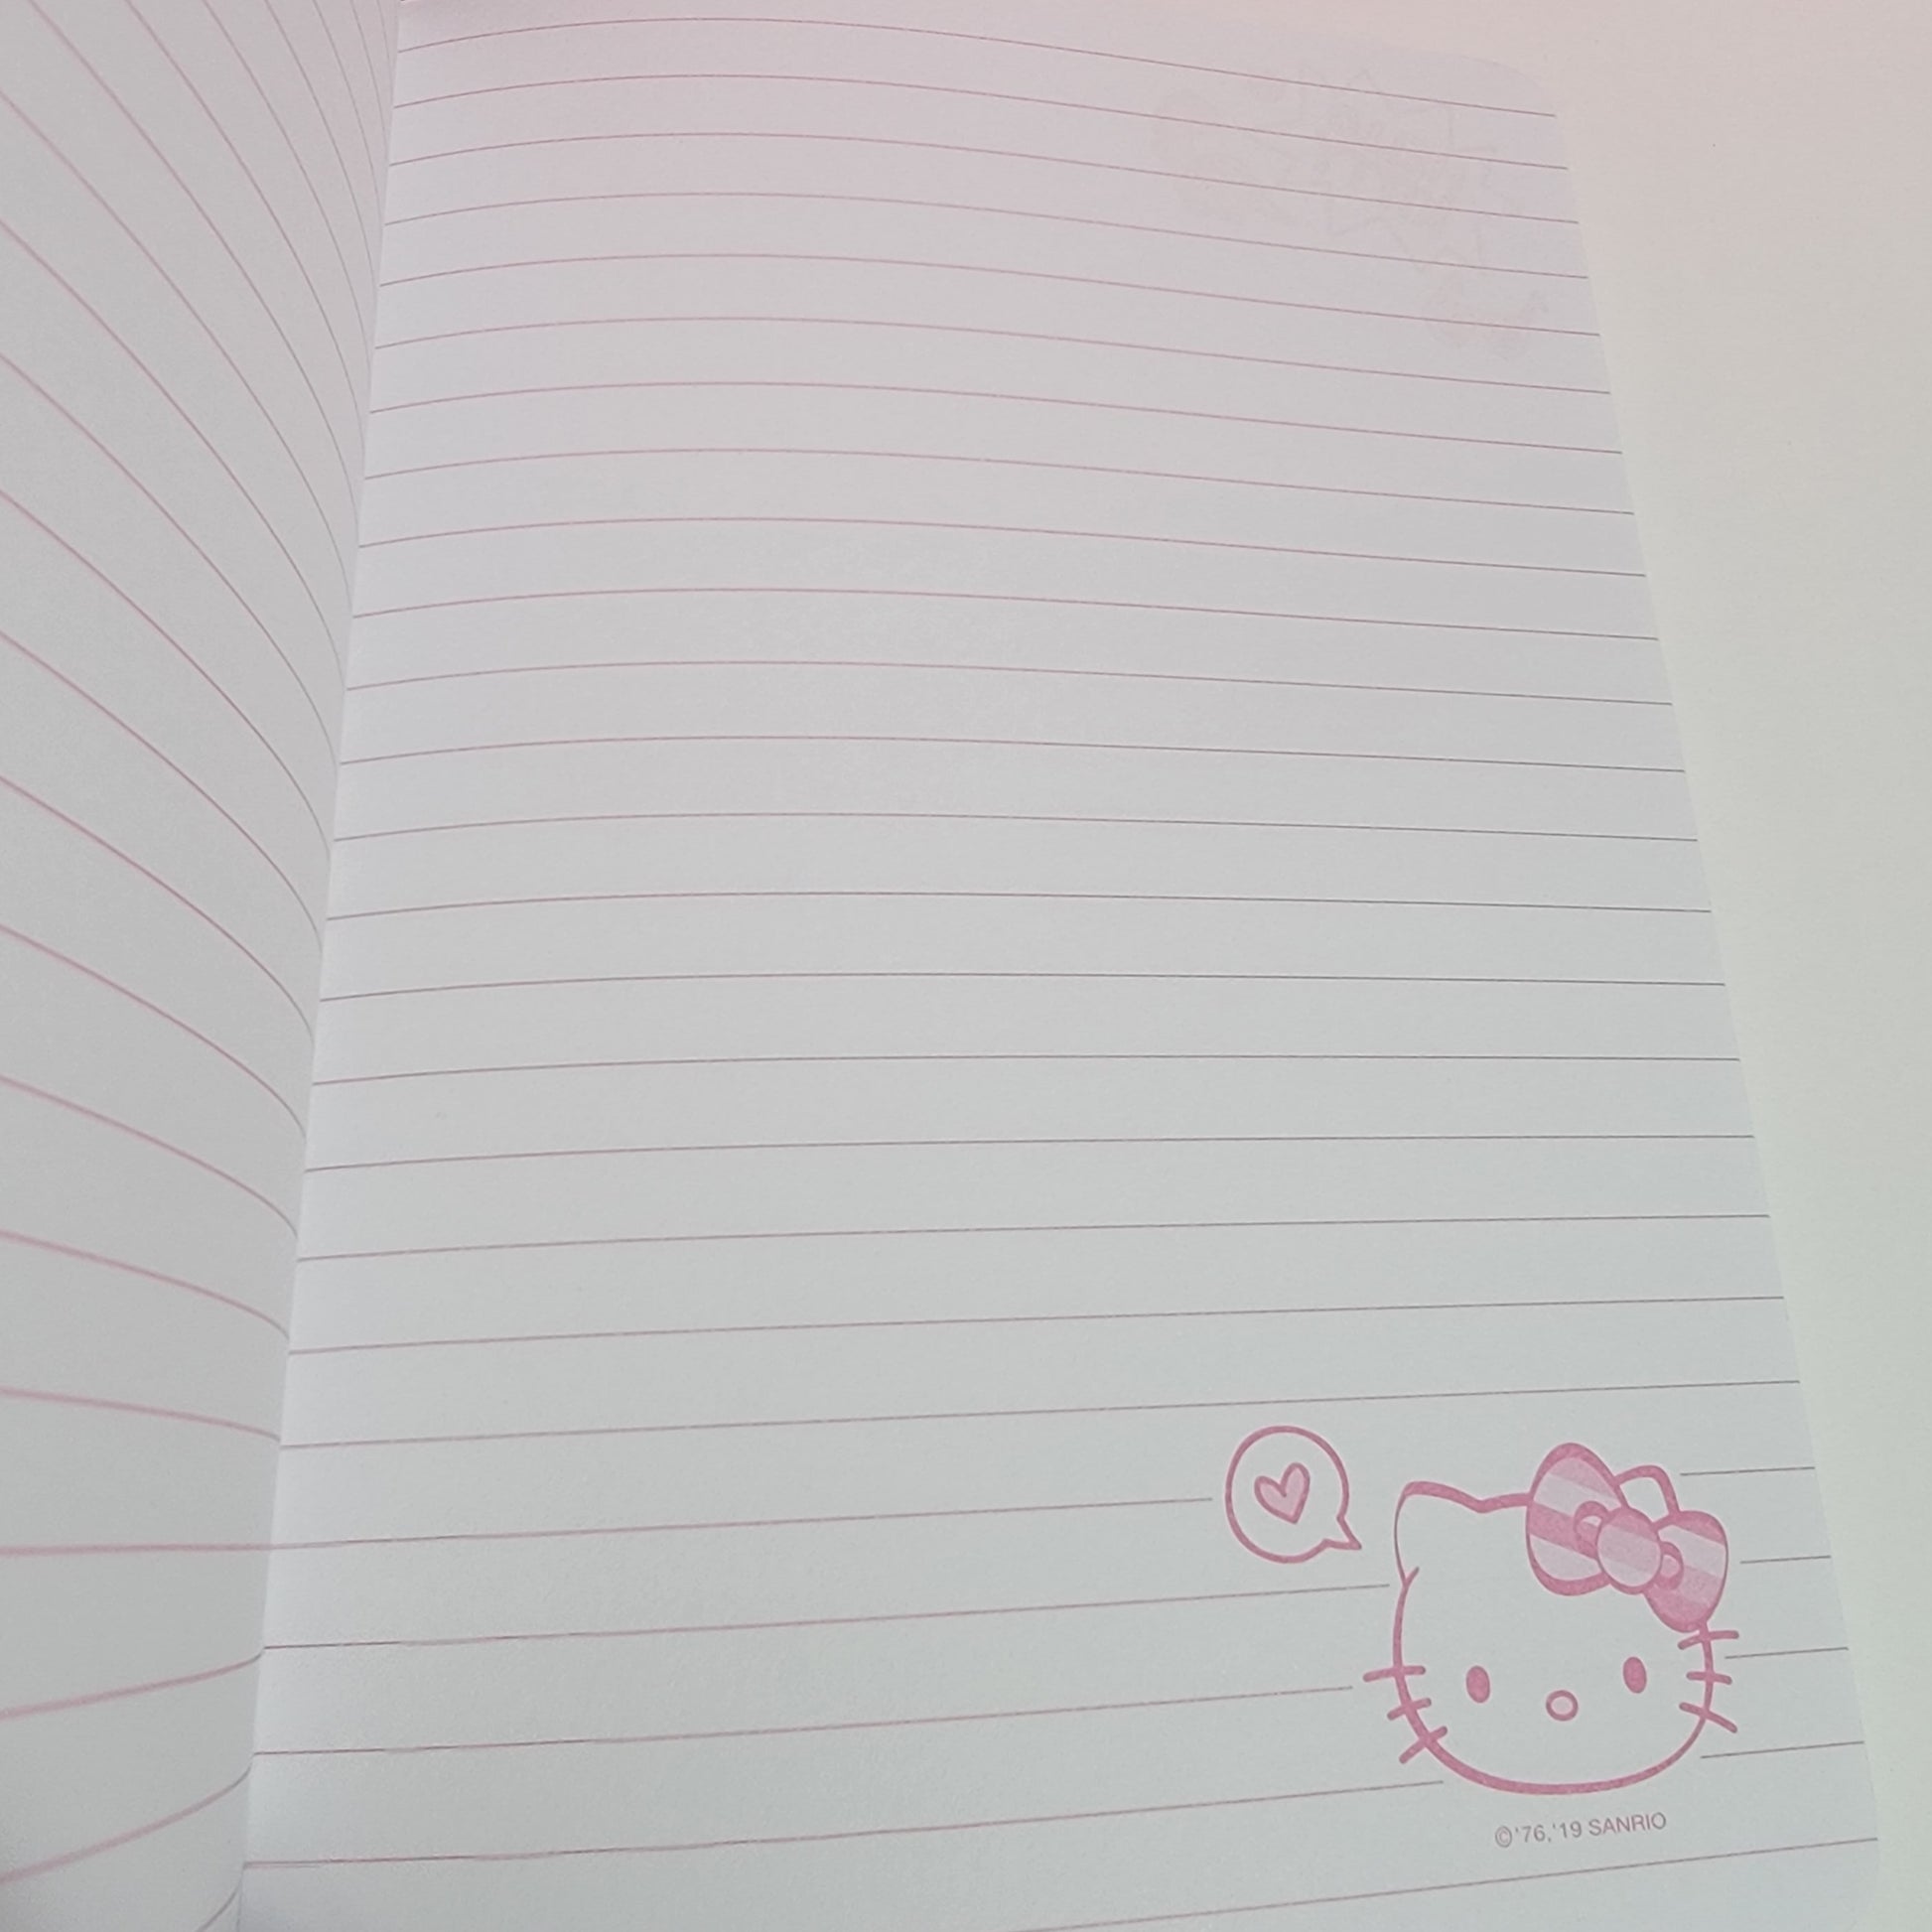 Hello Kitty Mini Notebook Set: Dinosaur